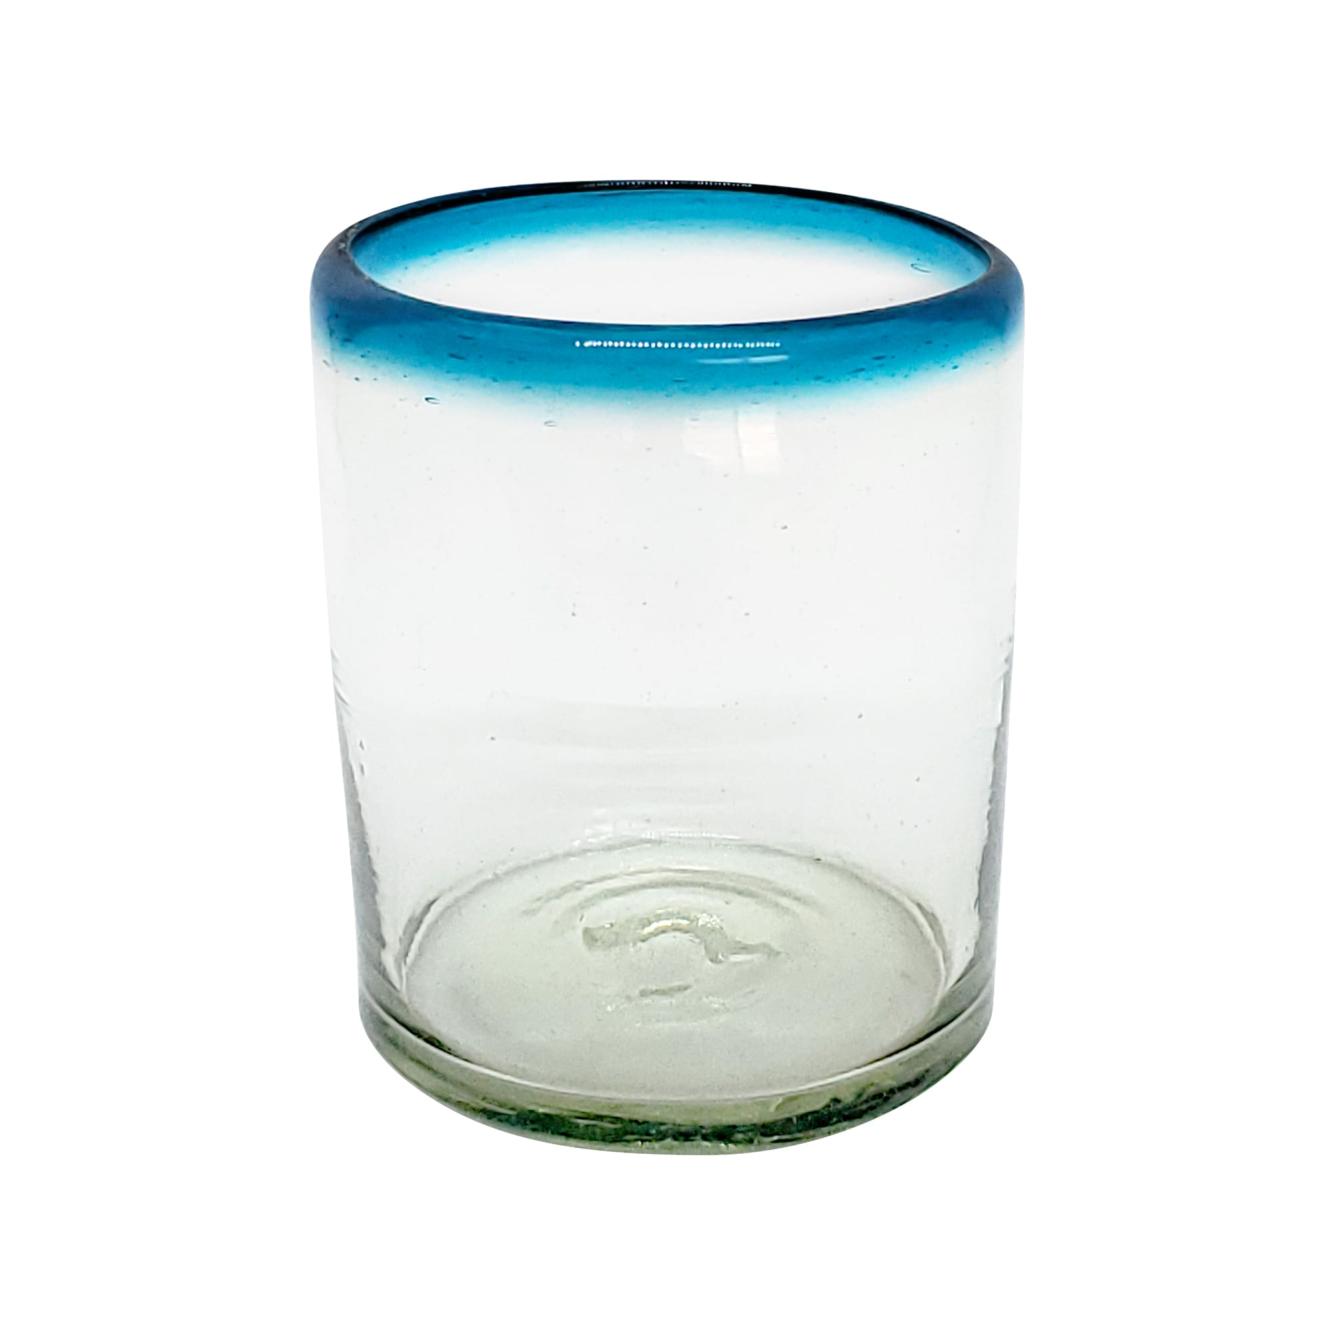 Novedades / vasos chicos con borde azul aqua / stos vasos chicos son un gran complemento para su juego de jarra y vasos grandes.